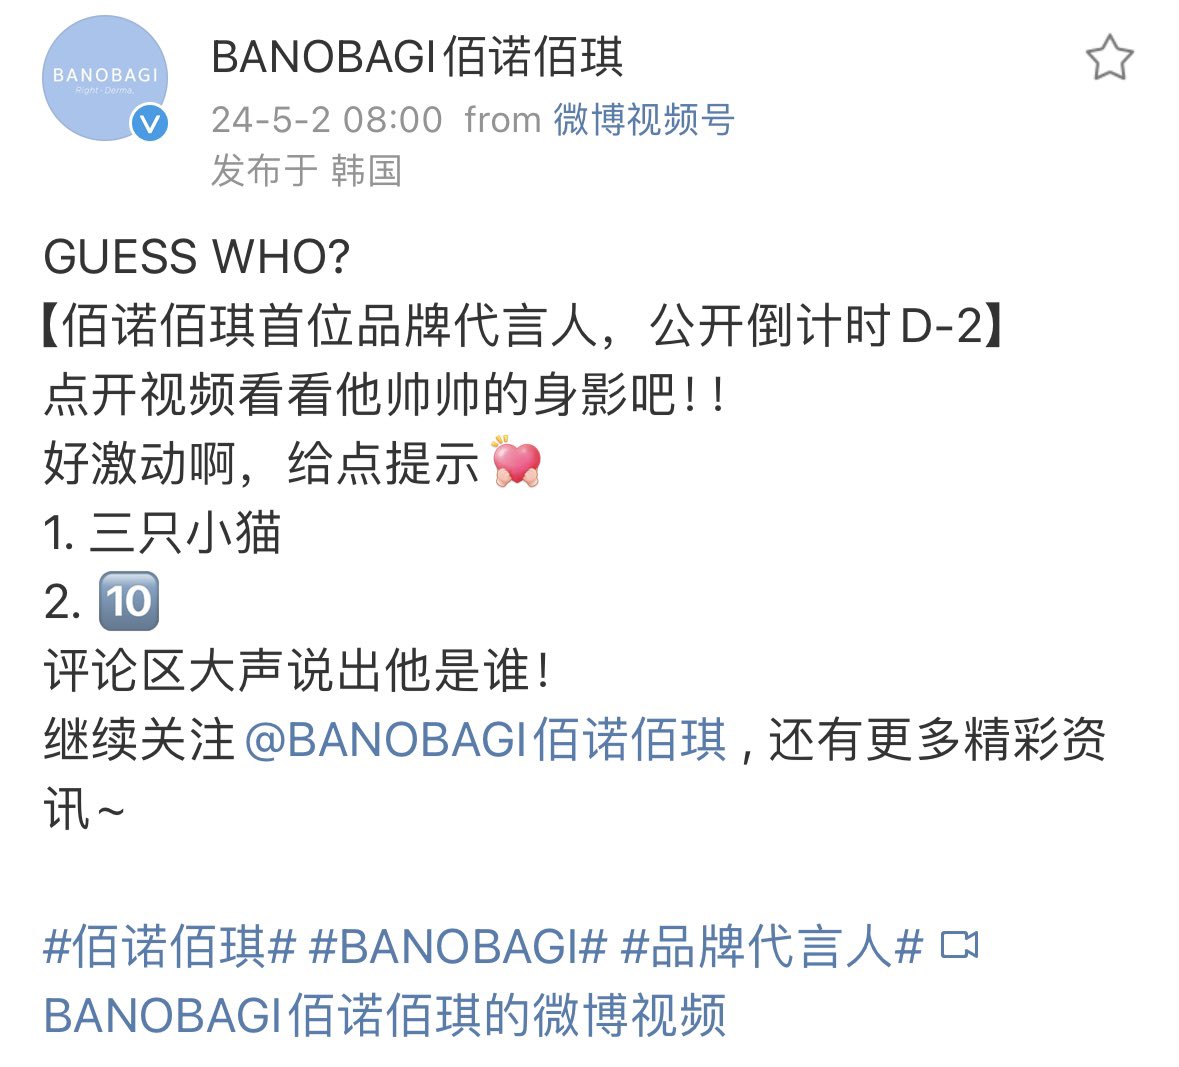 Weibo BANOBAGI คำใบ้คือ
1.แมว3ตัว
2.🔟
พูดออกมาดังๆเลยว่าคือใคร!

-แมวน้อยชินชินที่ผิวดีสุดๆของเราเอง
-ออกสินค้าที่ระลึกมาได้มั้ย จะซื้อเยอะๆ
-รอคอย Brand Ambassador of Asiaหลีหย่งชิน
-BANOBAGIเทสดีมาก
-ชั้นซื้อเยอะๆเลย
-ปะป๊า10ของ Louis Leon Leviใช่มั้ย

#BANOBAGINEWAMBASSADOR